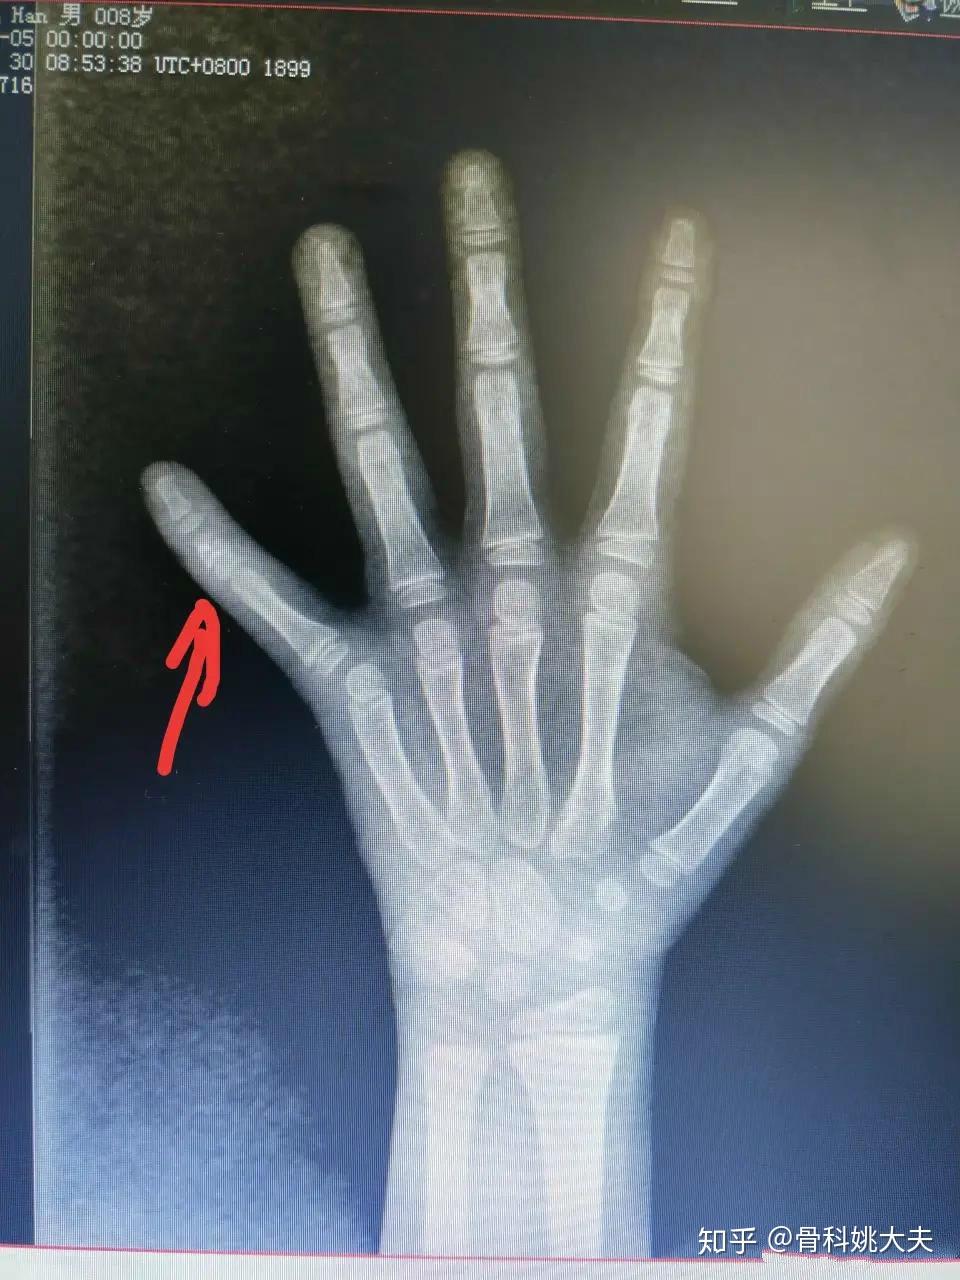 手指拇指籽骨x光片图图片